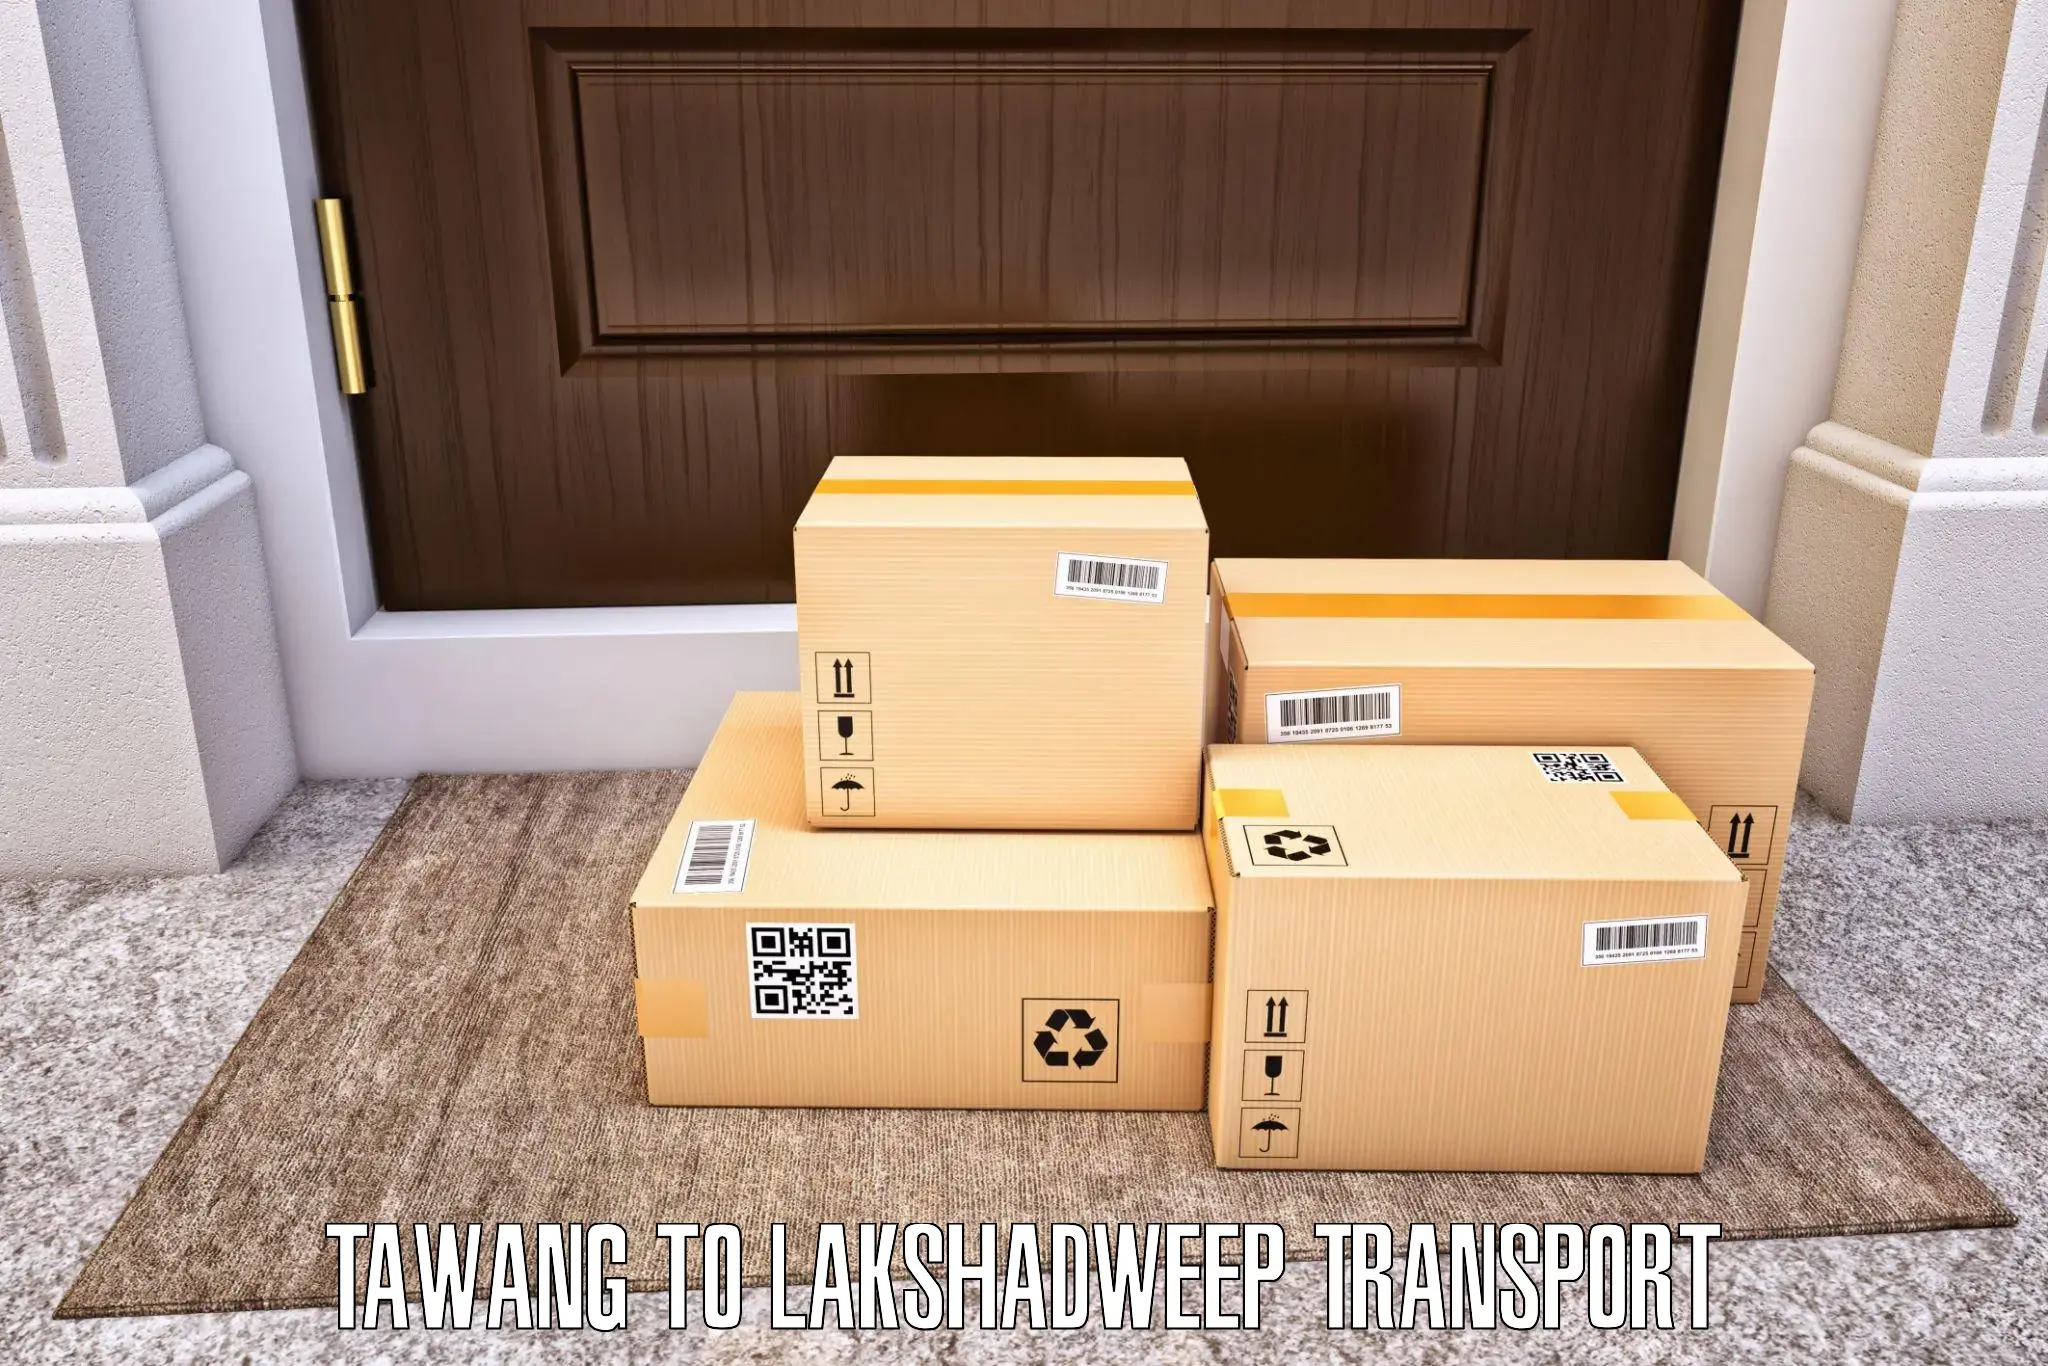 Interstate transport services Tawang to Lakshadweep